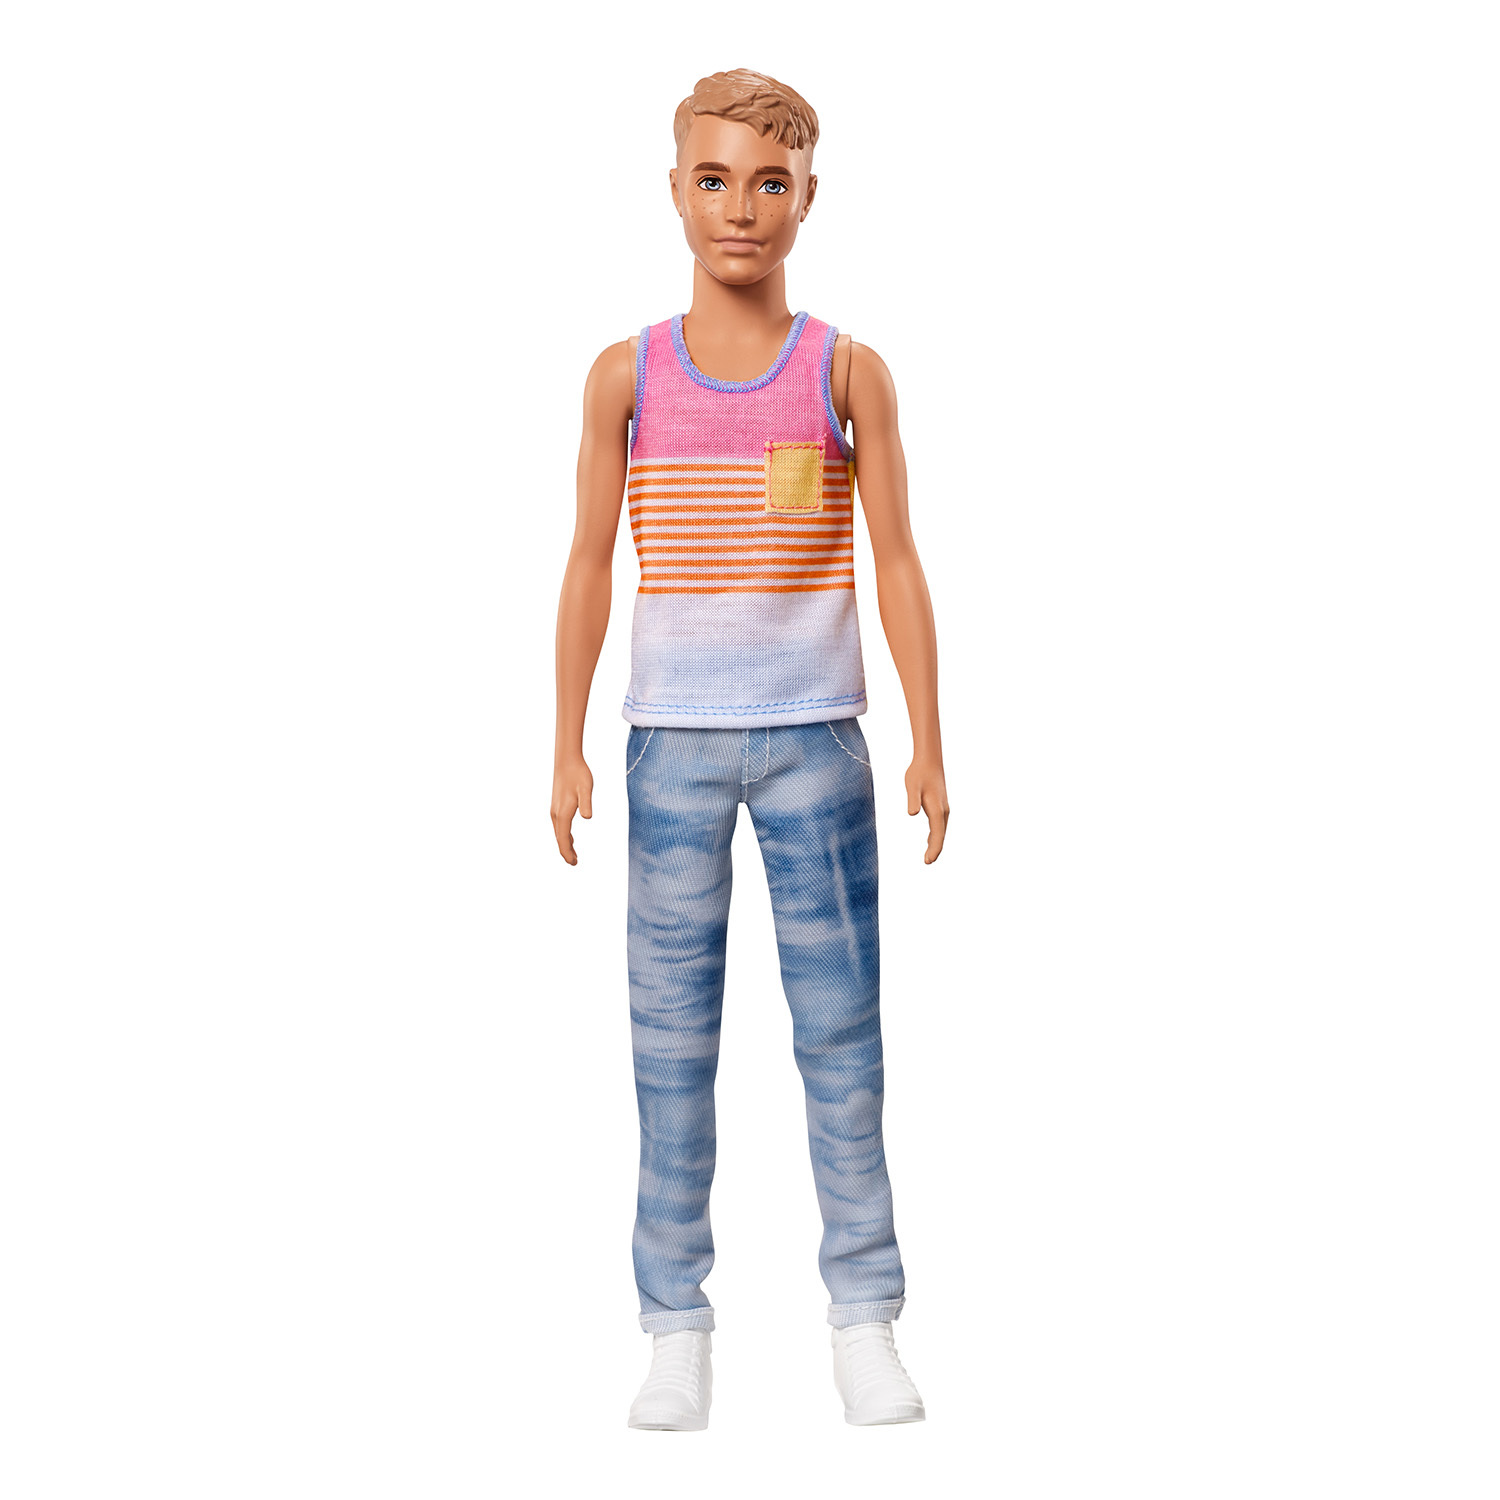 Кукла Barbie Игра с модой Кен FNH43 DWK44 - фото 6